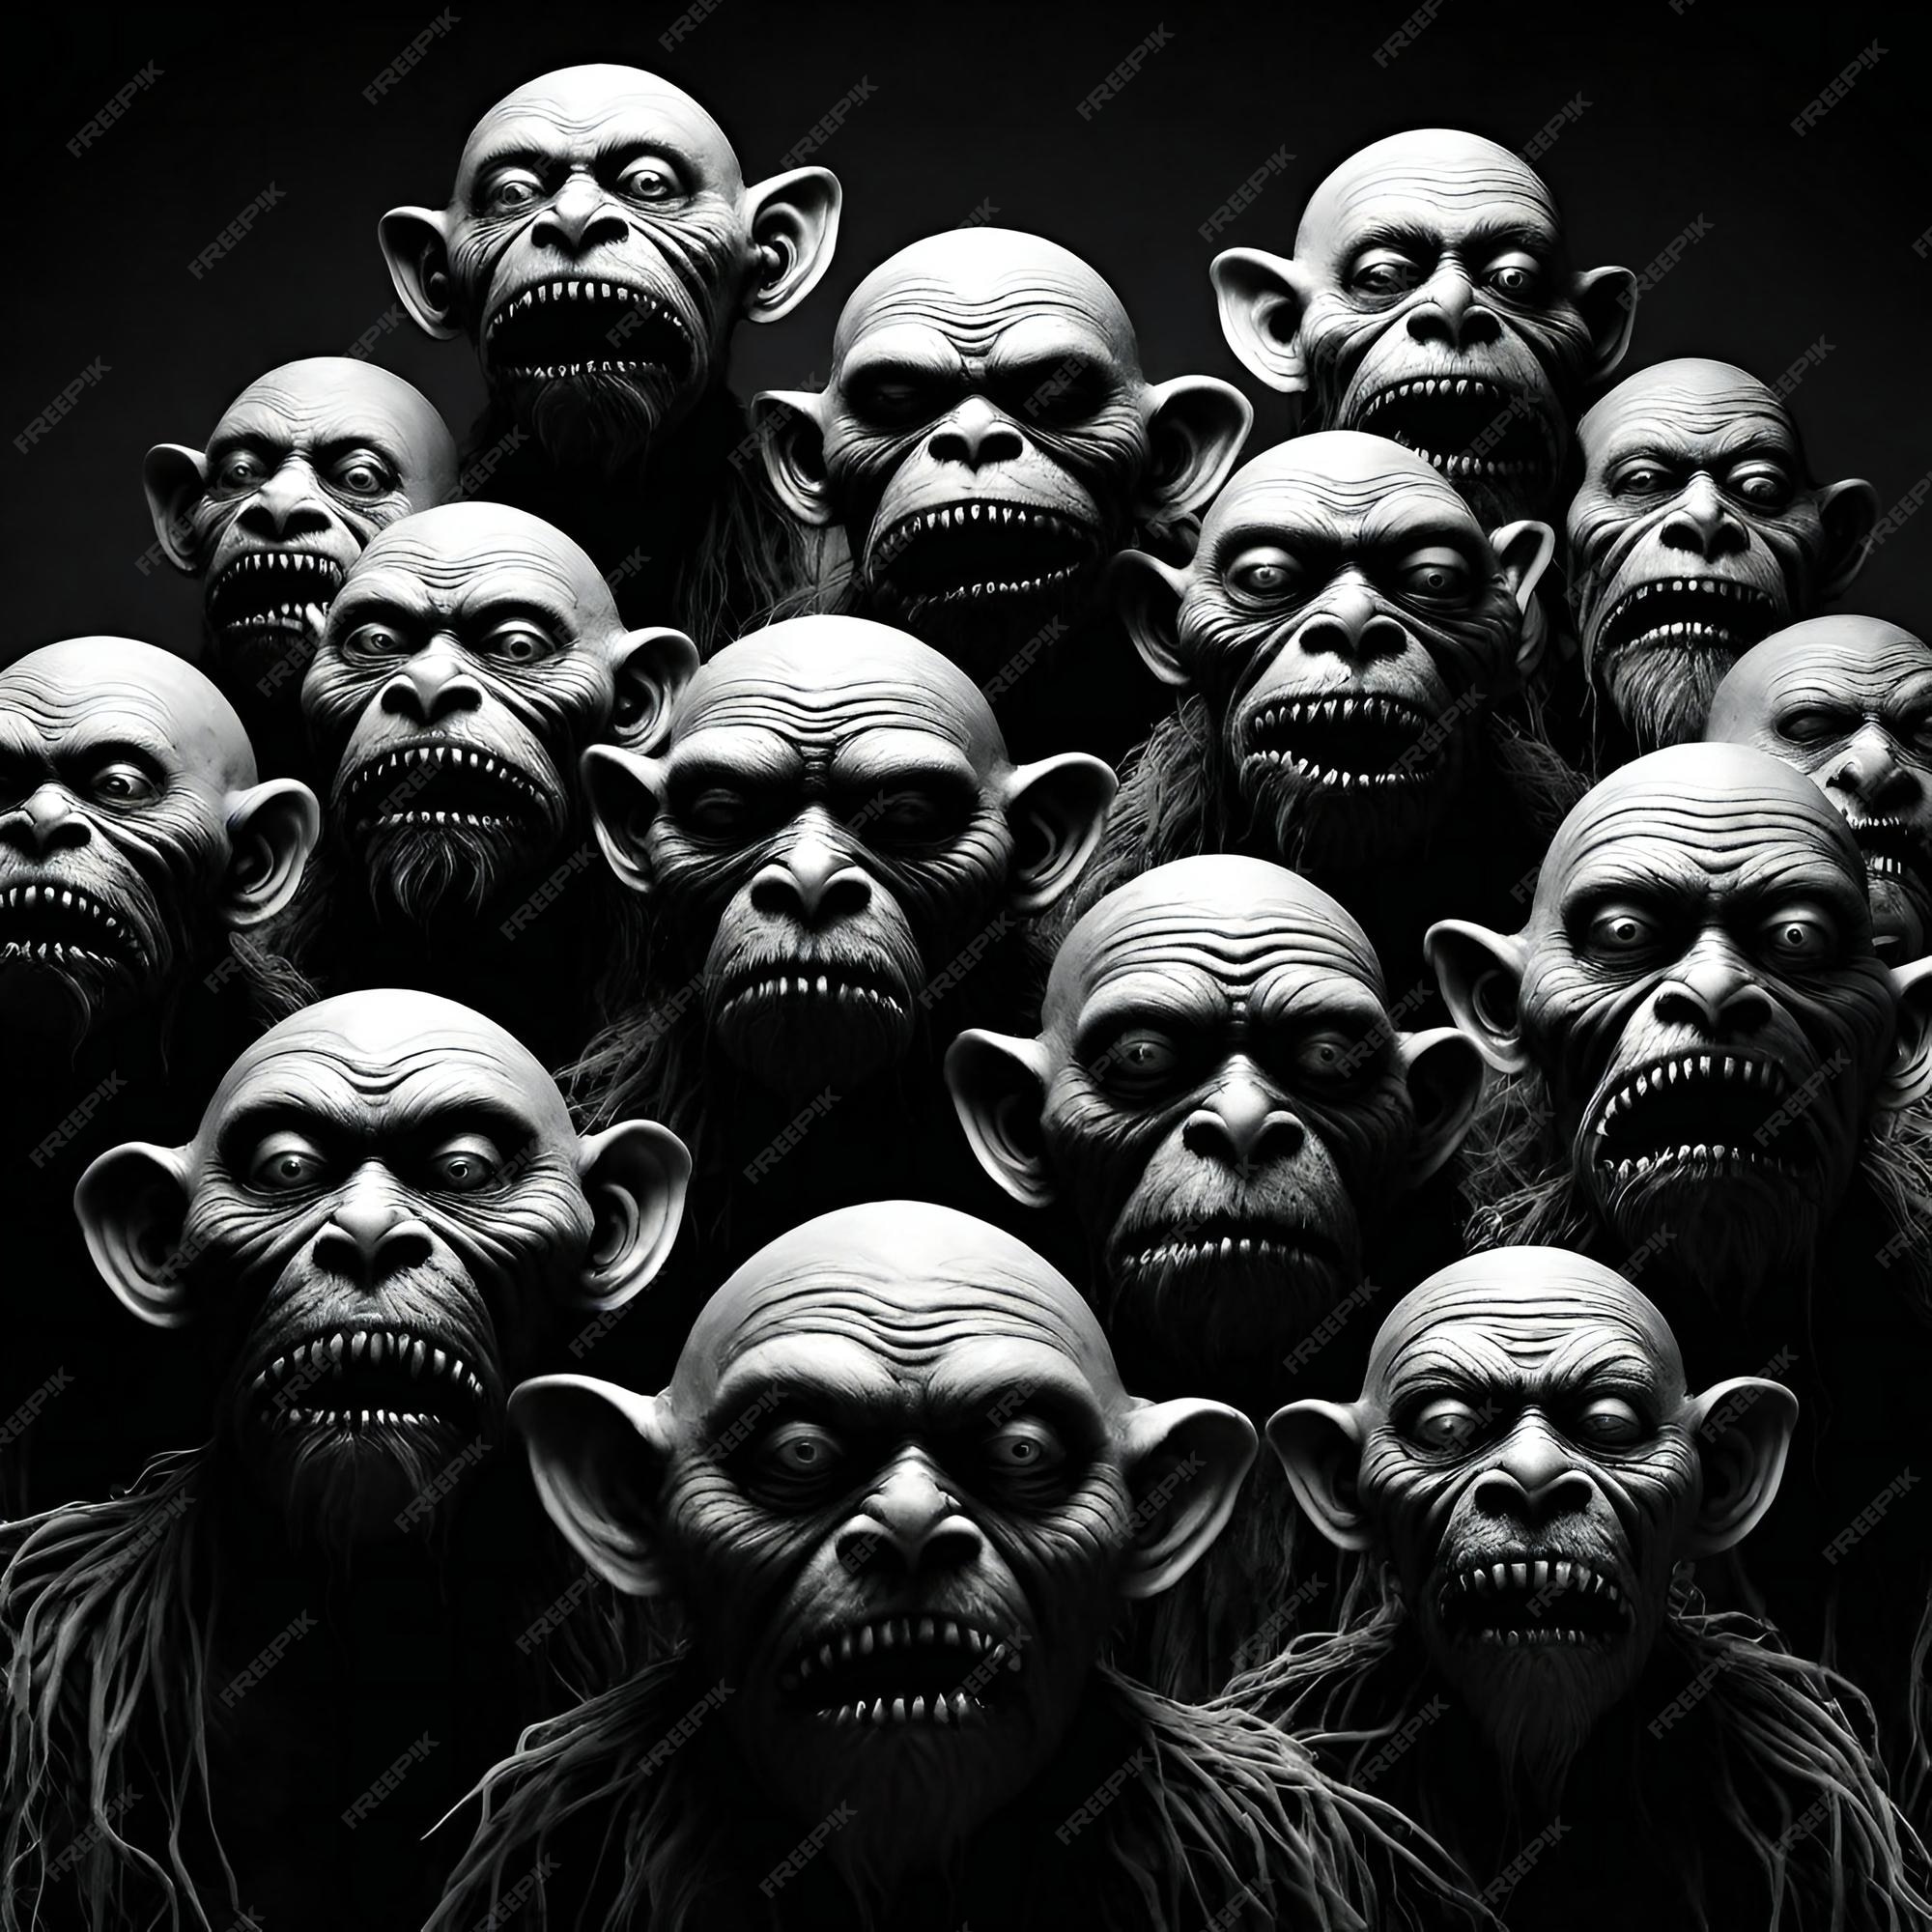 Imagem monocromática de um grupo de rostos assustadores em um fundo escuro